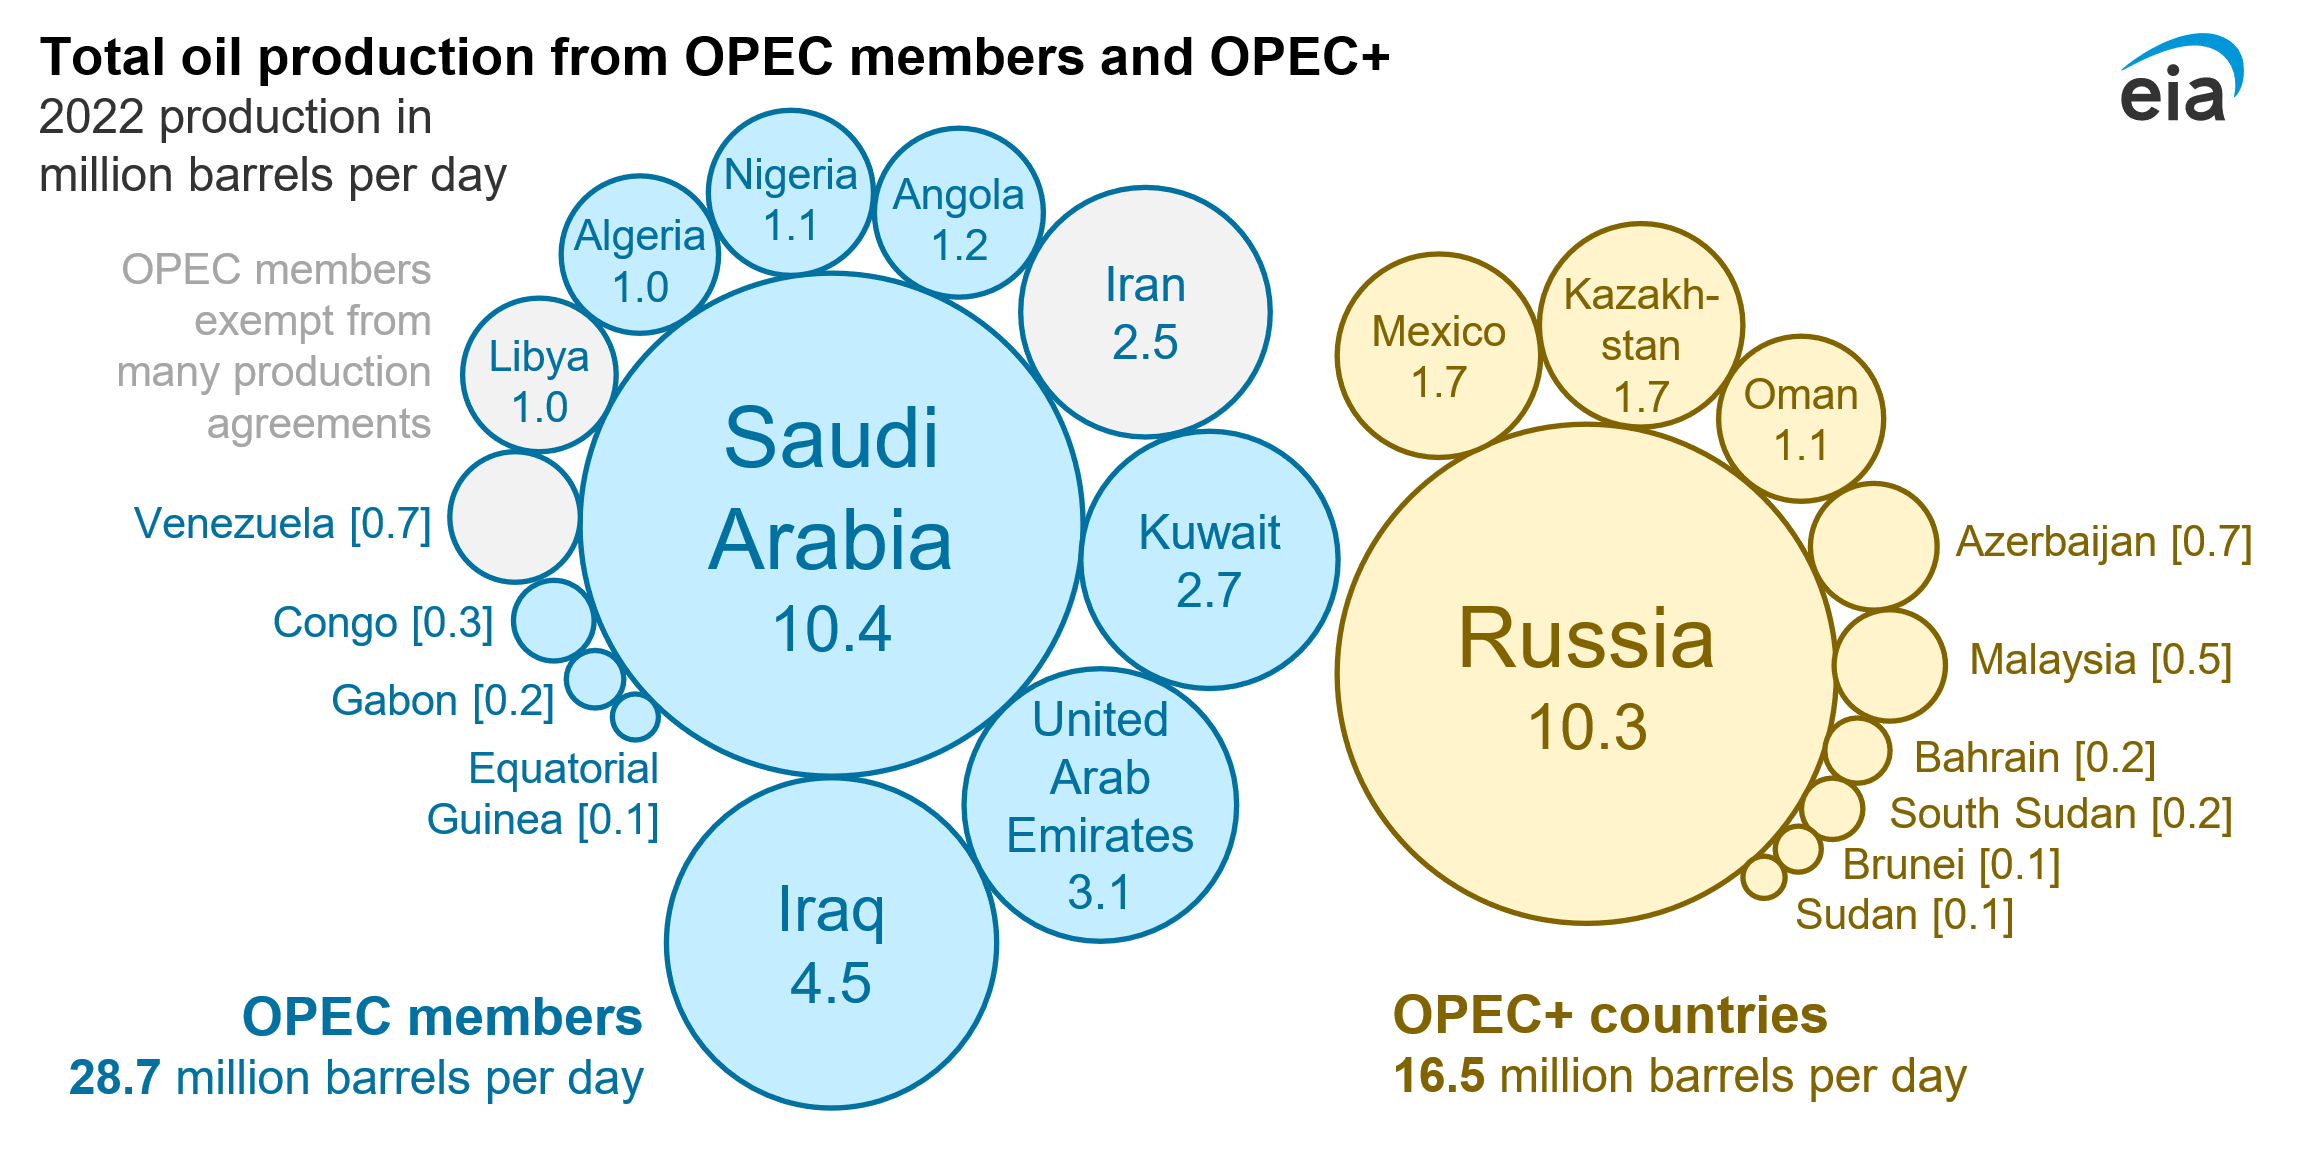 Γράφημα 1.1 Η παραγωγή πετρελαίου των μελών του OPEC και του OPEC+ το 2022